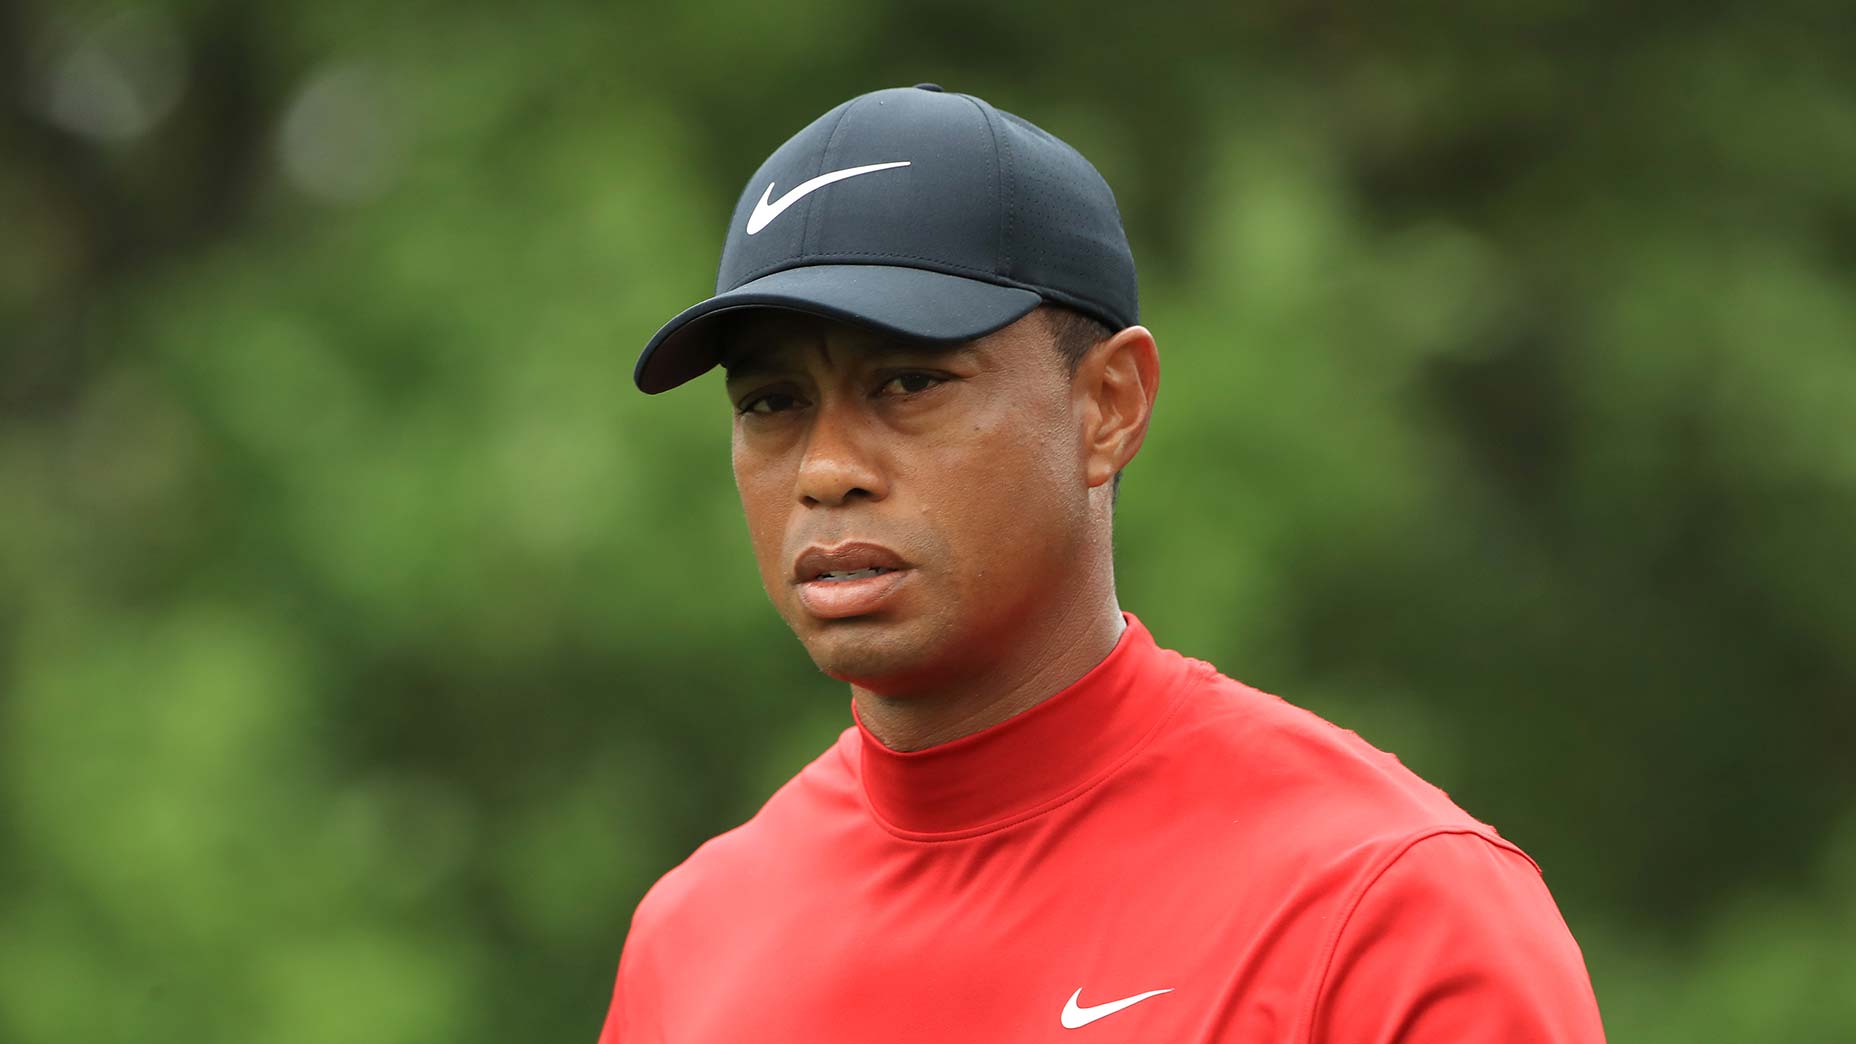 Αναρρώνει ο θρύλος του γκολφ Tiger Woods μετά από αυτοκινητιστικό ατύχημα